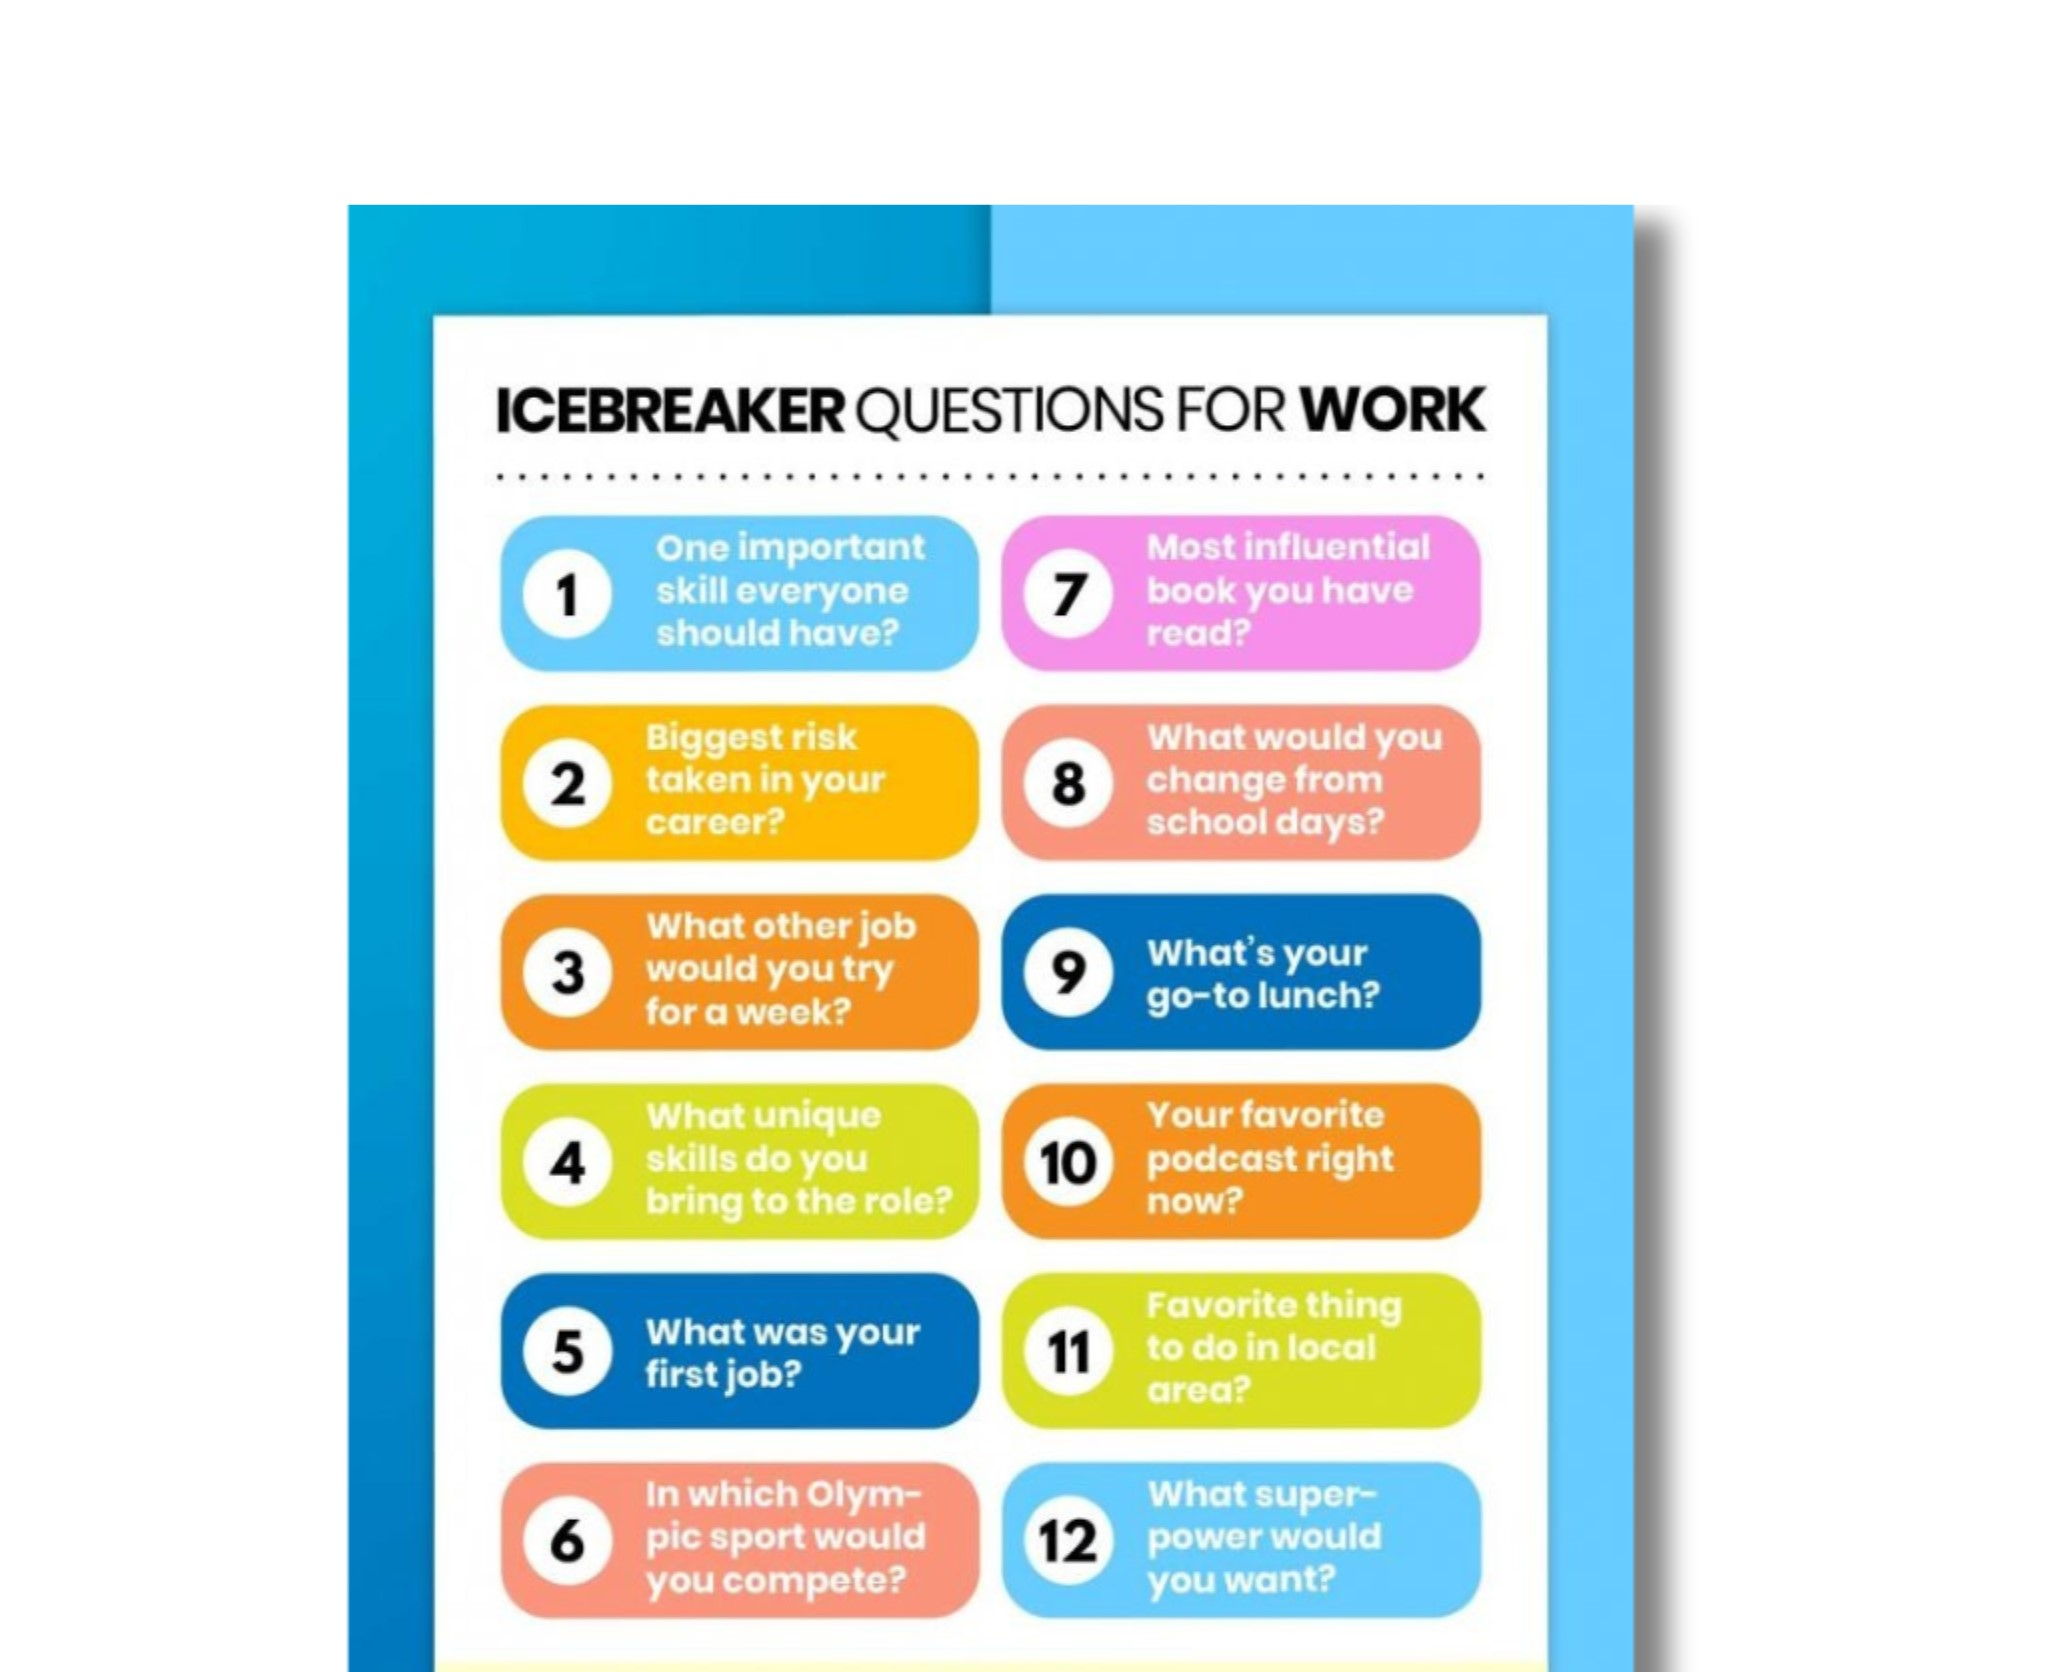 Ice Breaker Questions